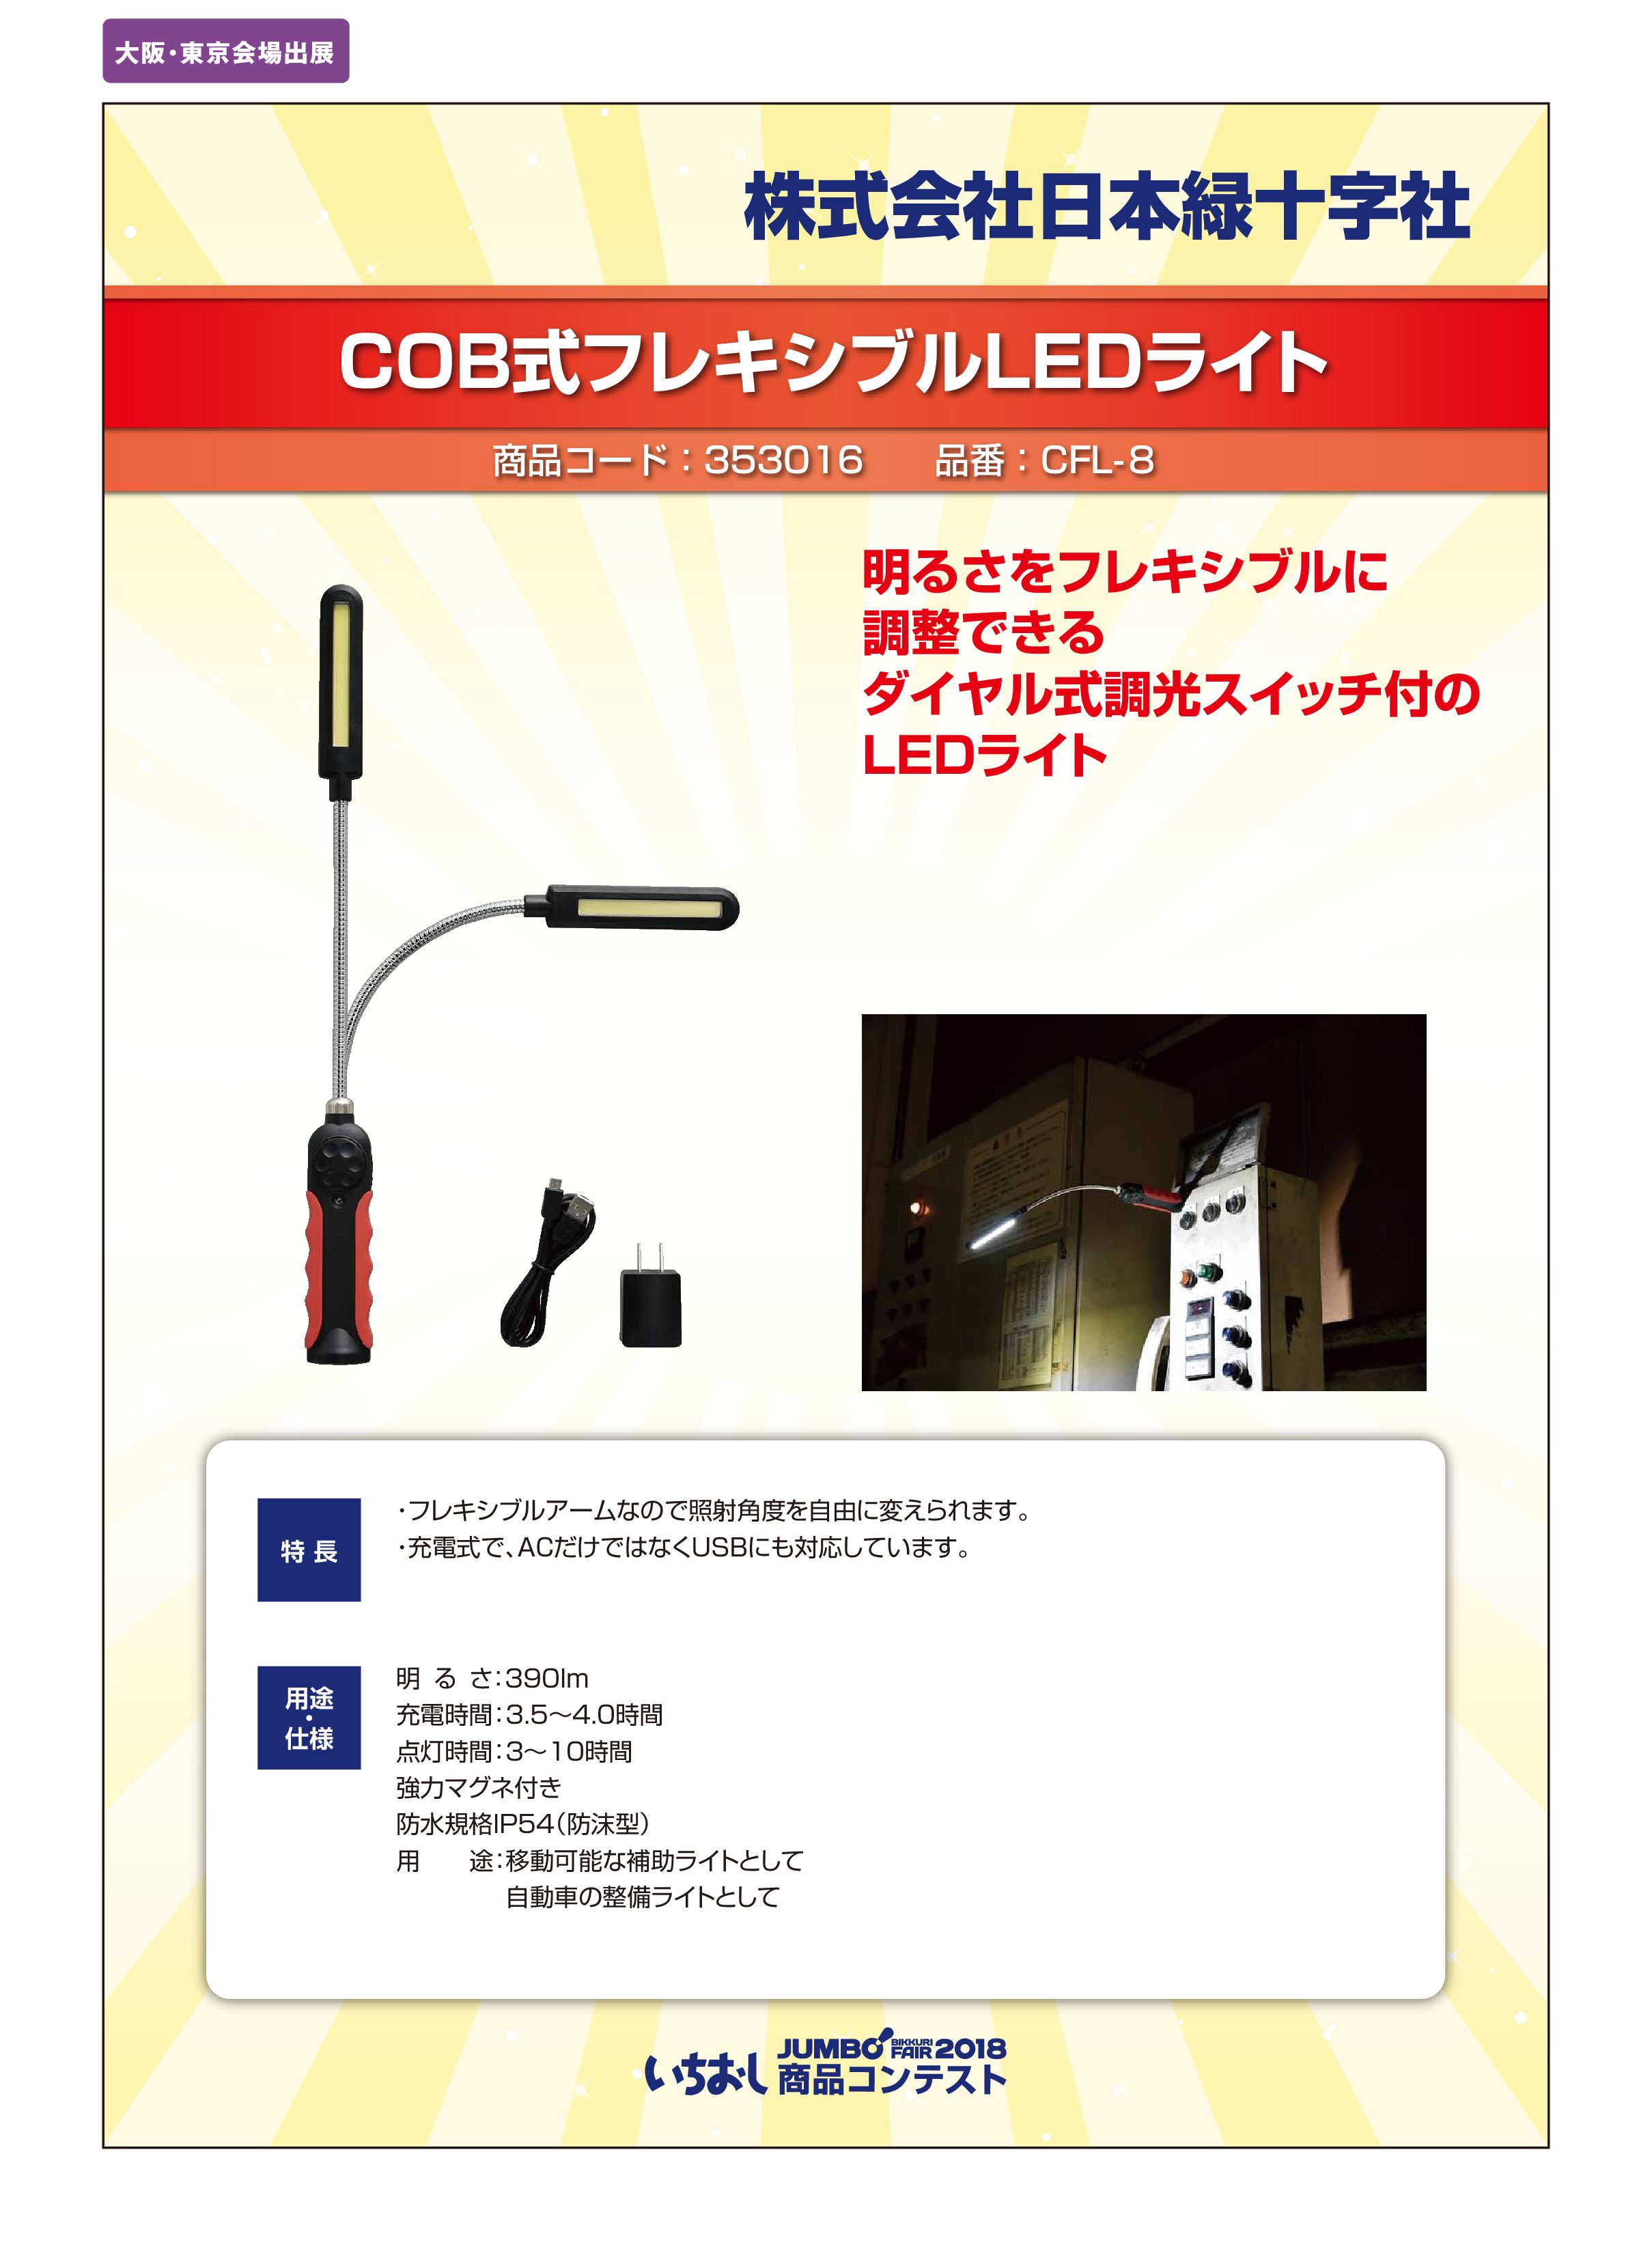 「COB式フレキシブルLEDライト」株式会社日本緑十字社の画像